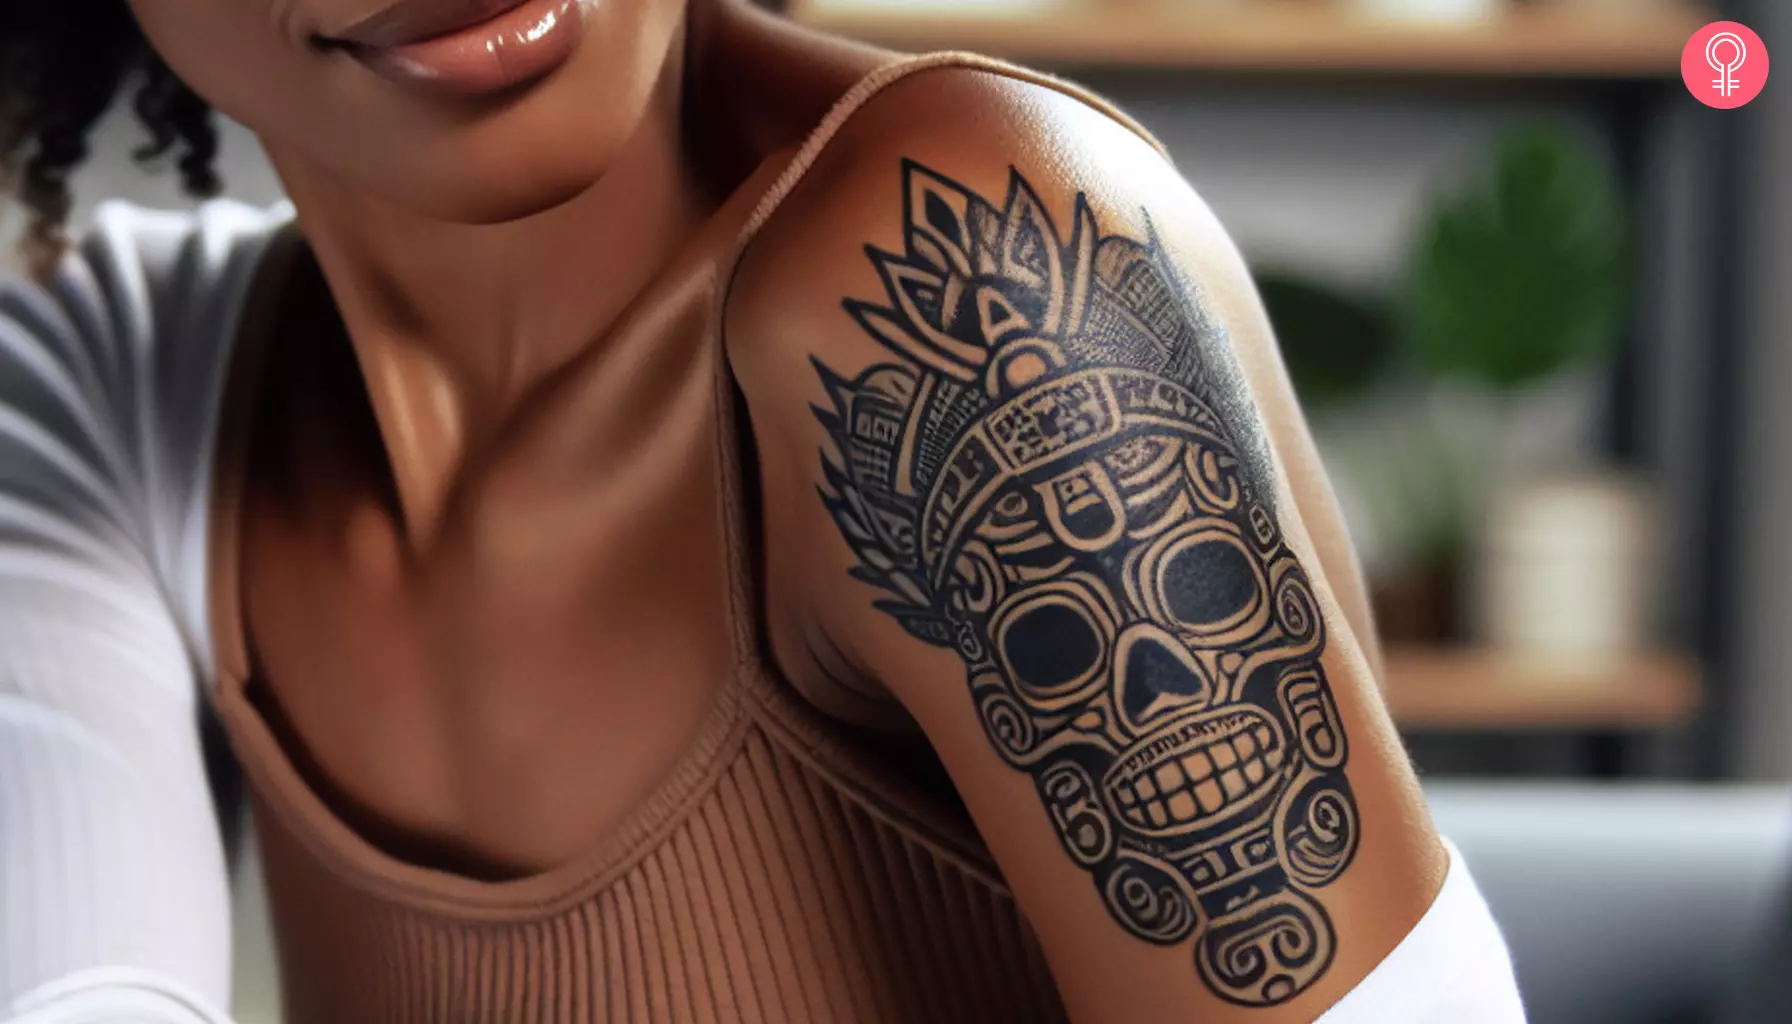 Mayan skull tattoo on a woman’s bicep